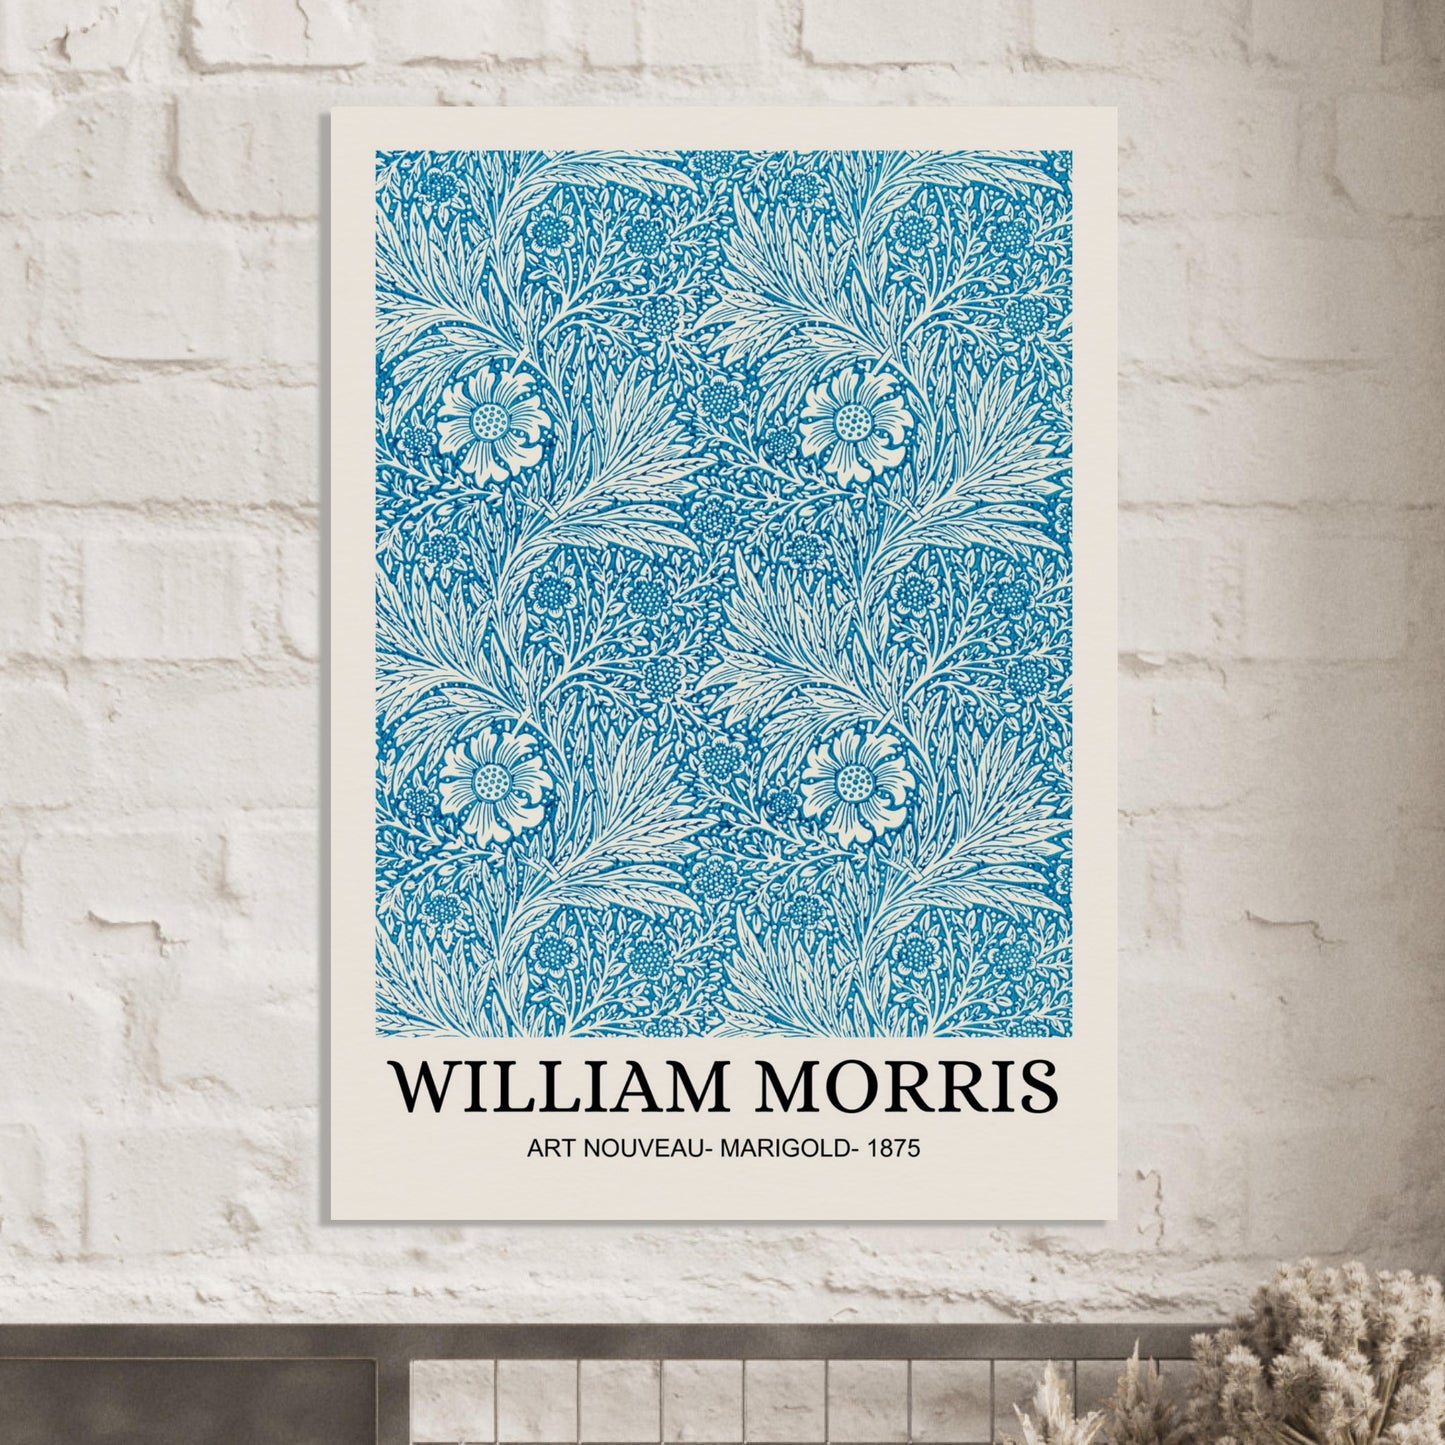 William Morris Marigold